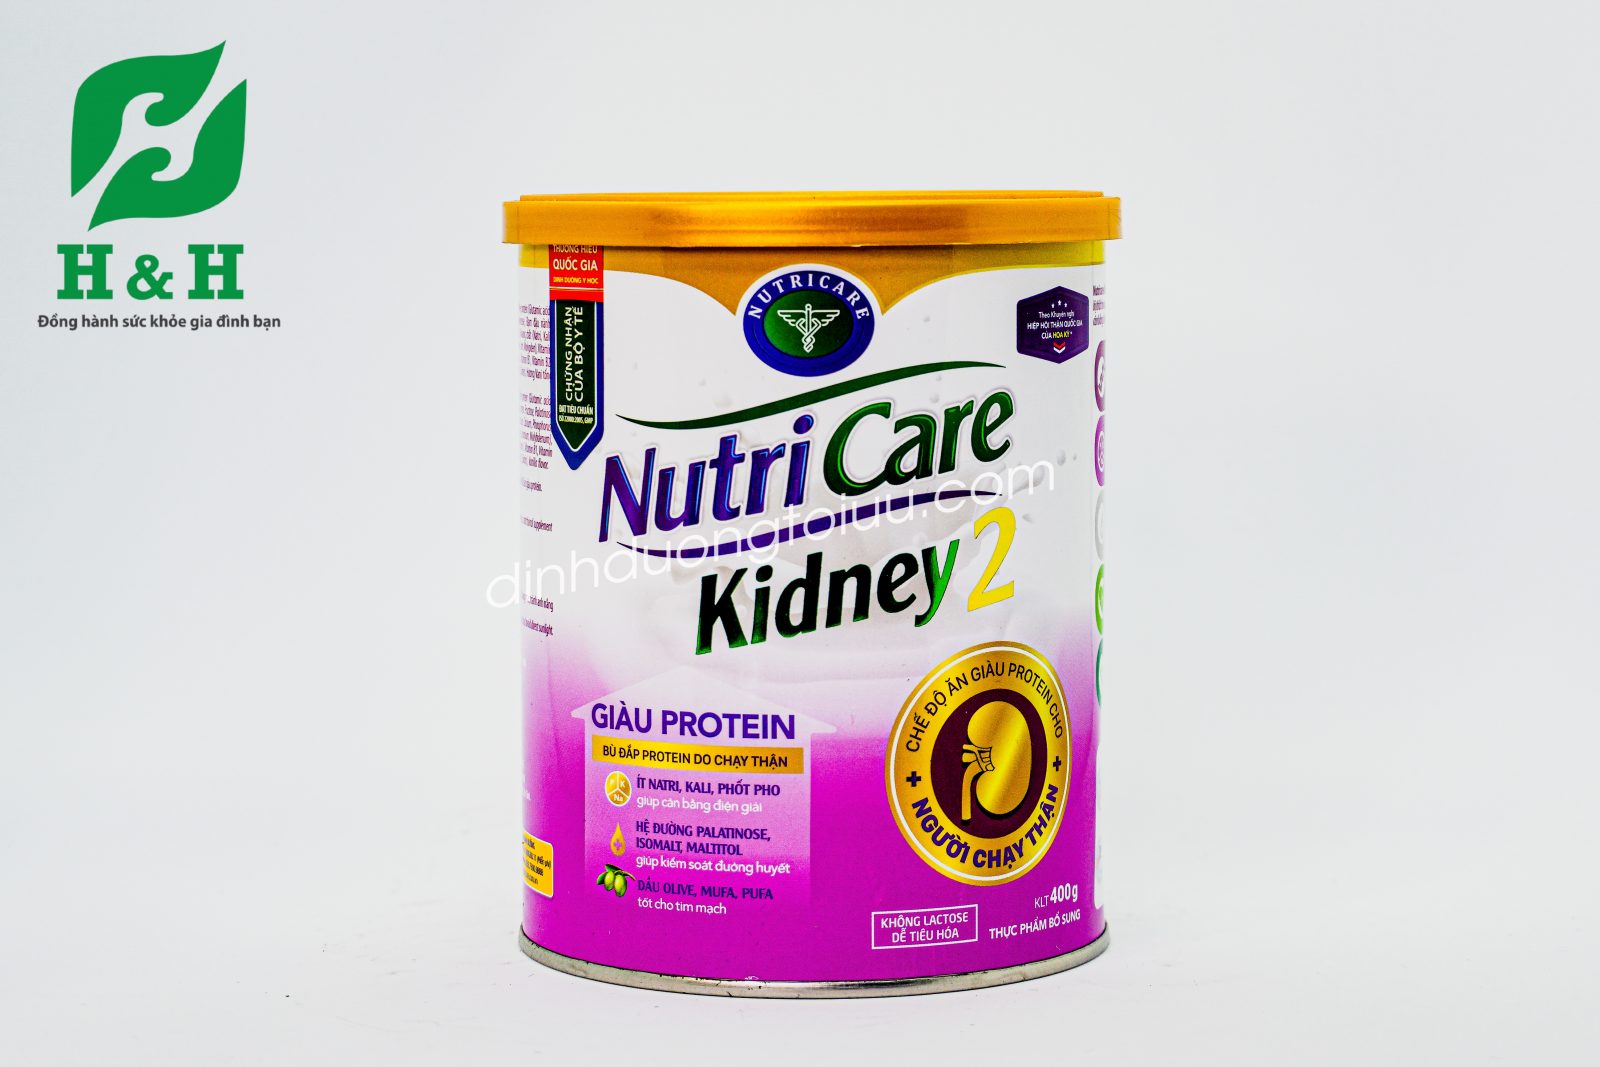 Sữa Nutricare Kidney 2 giàu protein, dễ tiêu hóa, bổ sung Vitamin và khoáng chất giúp cân bằng điện giải, giảm thiếu máu, hỗ trợ kiểm soát đường huyết, tốt cho tim mạch.